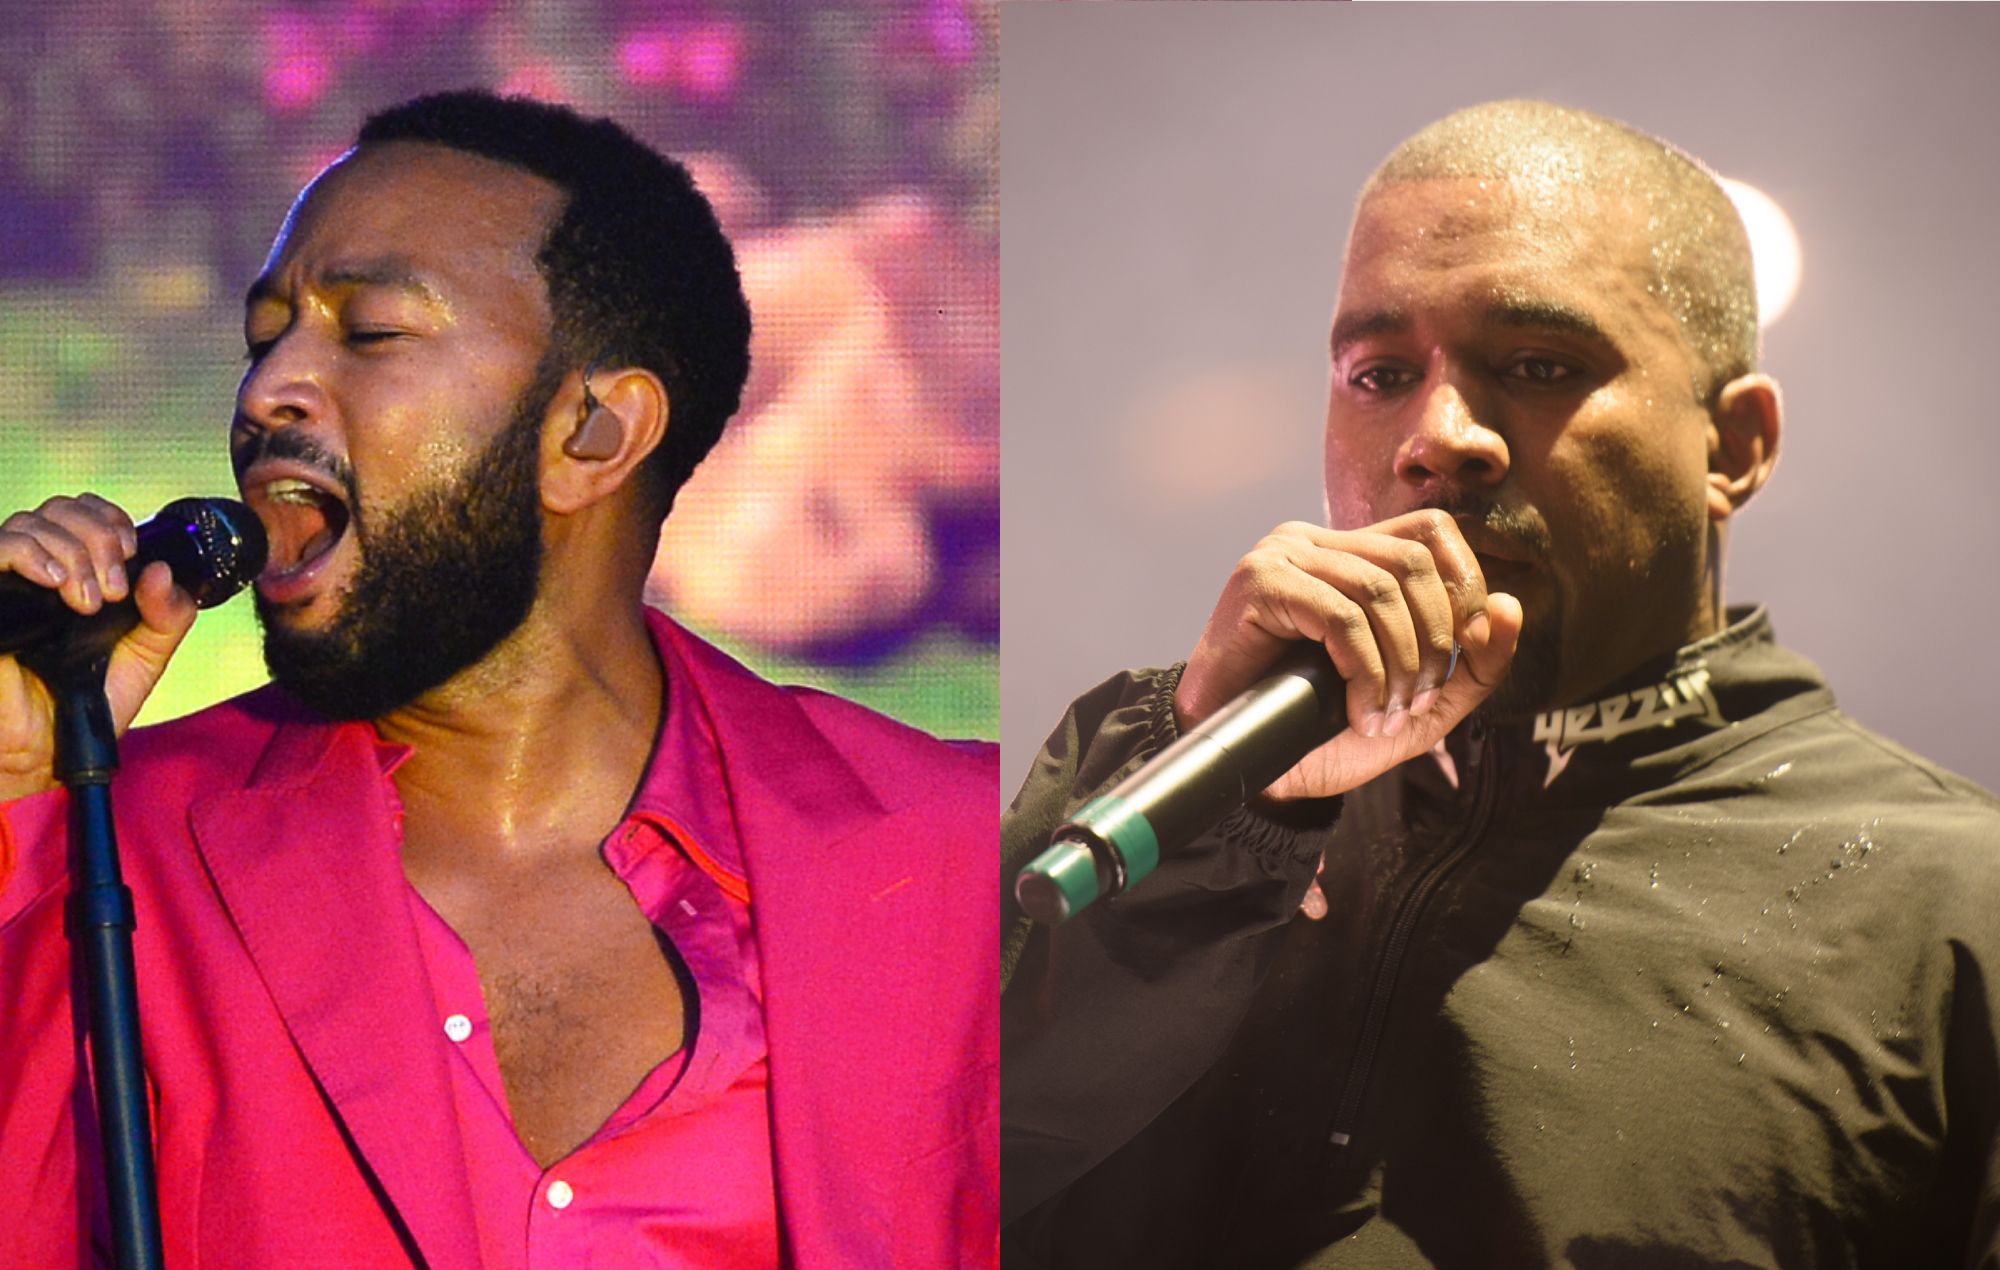 John Legend dice que Donald Trump es la razón por la que él y Kanye West no son tan cercanos